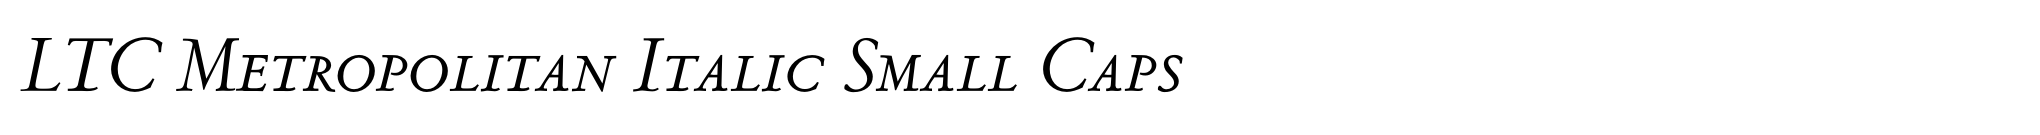 LTC Metropolitan Italic Small Caps image